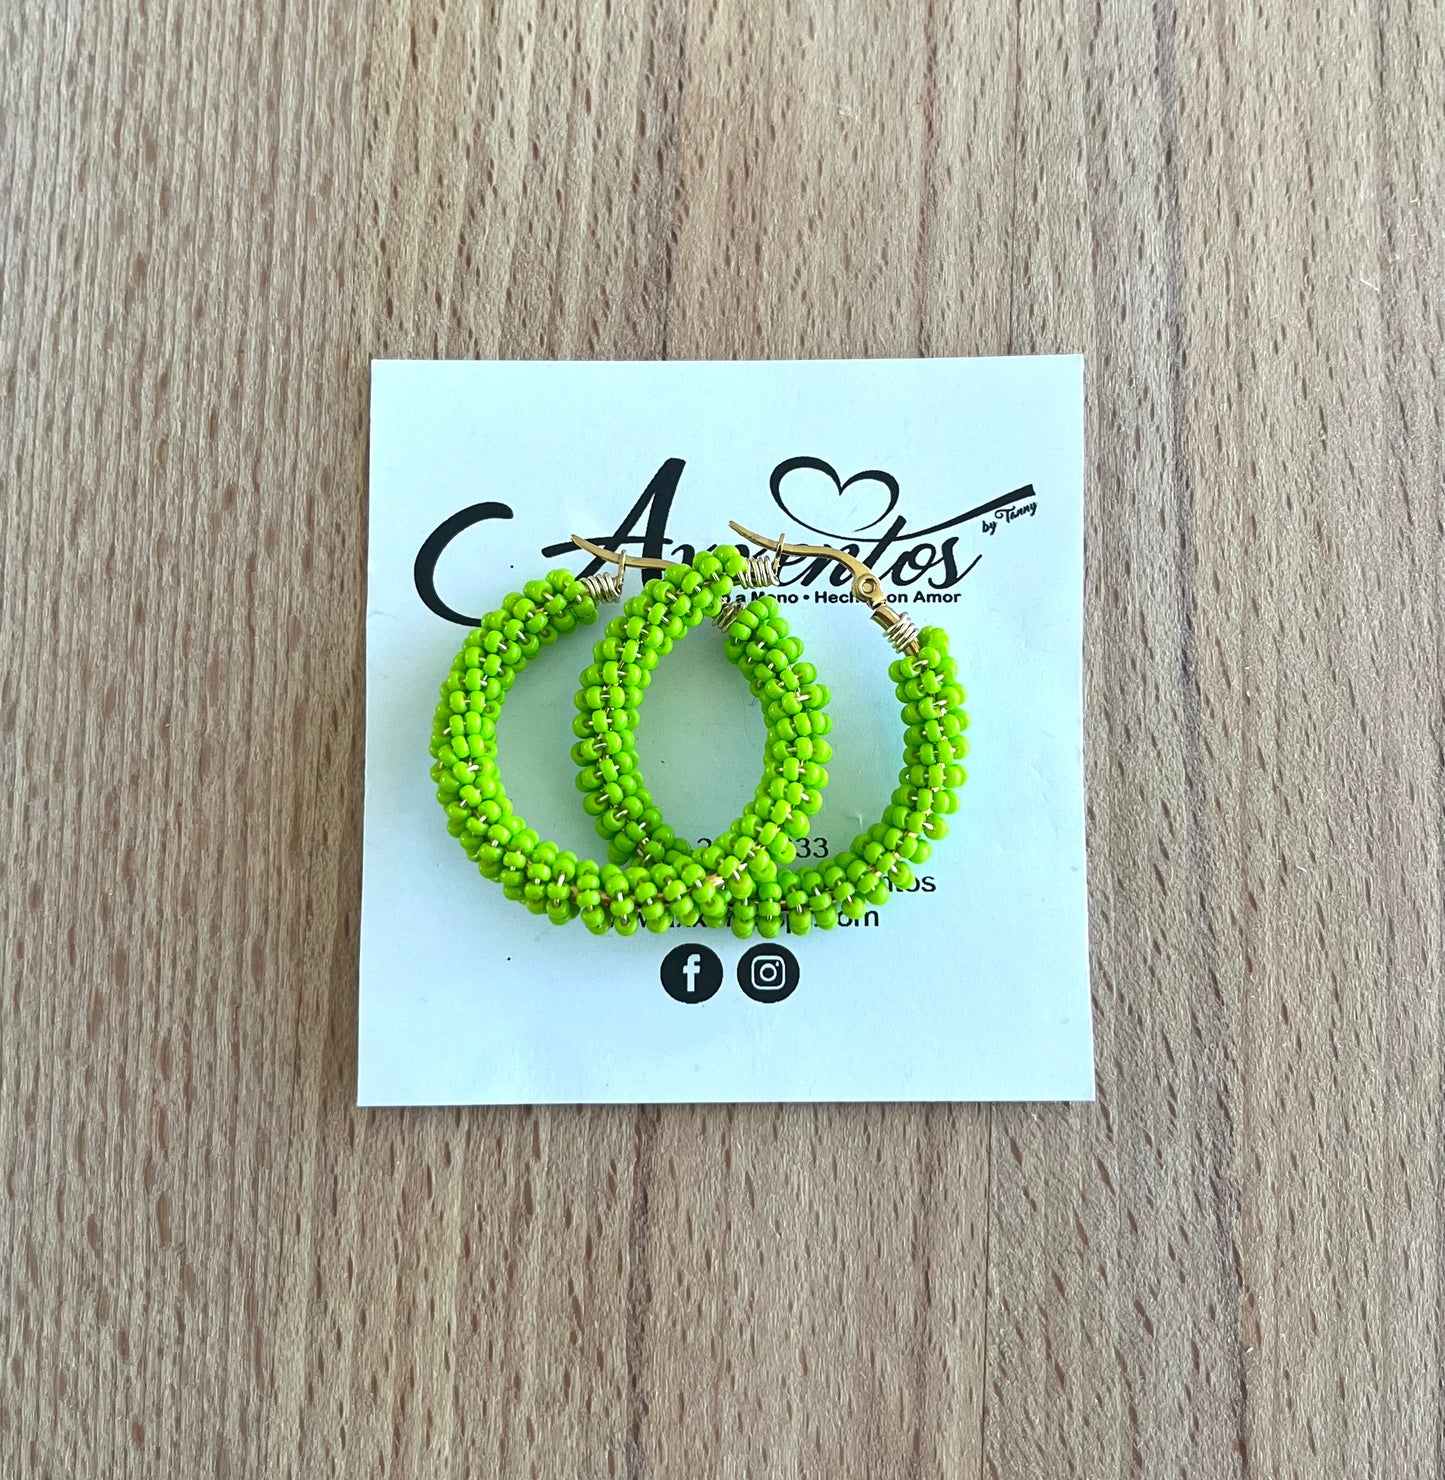 Doble hoops earrings medium